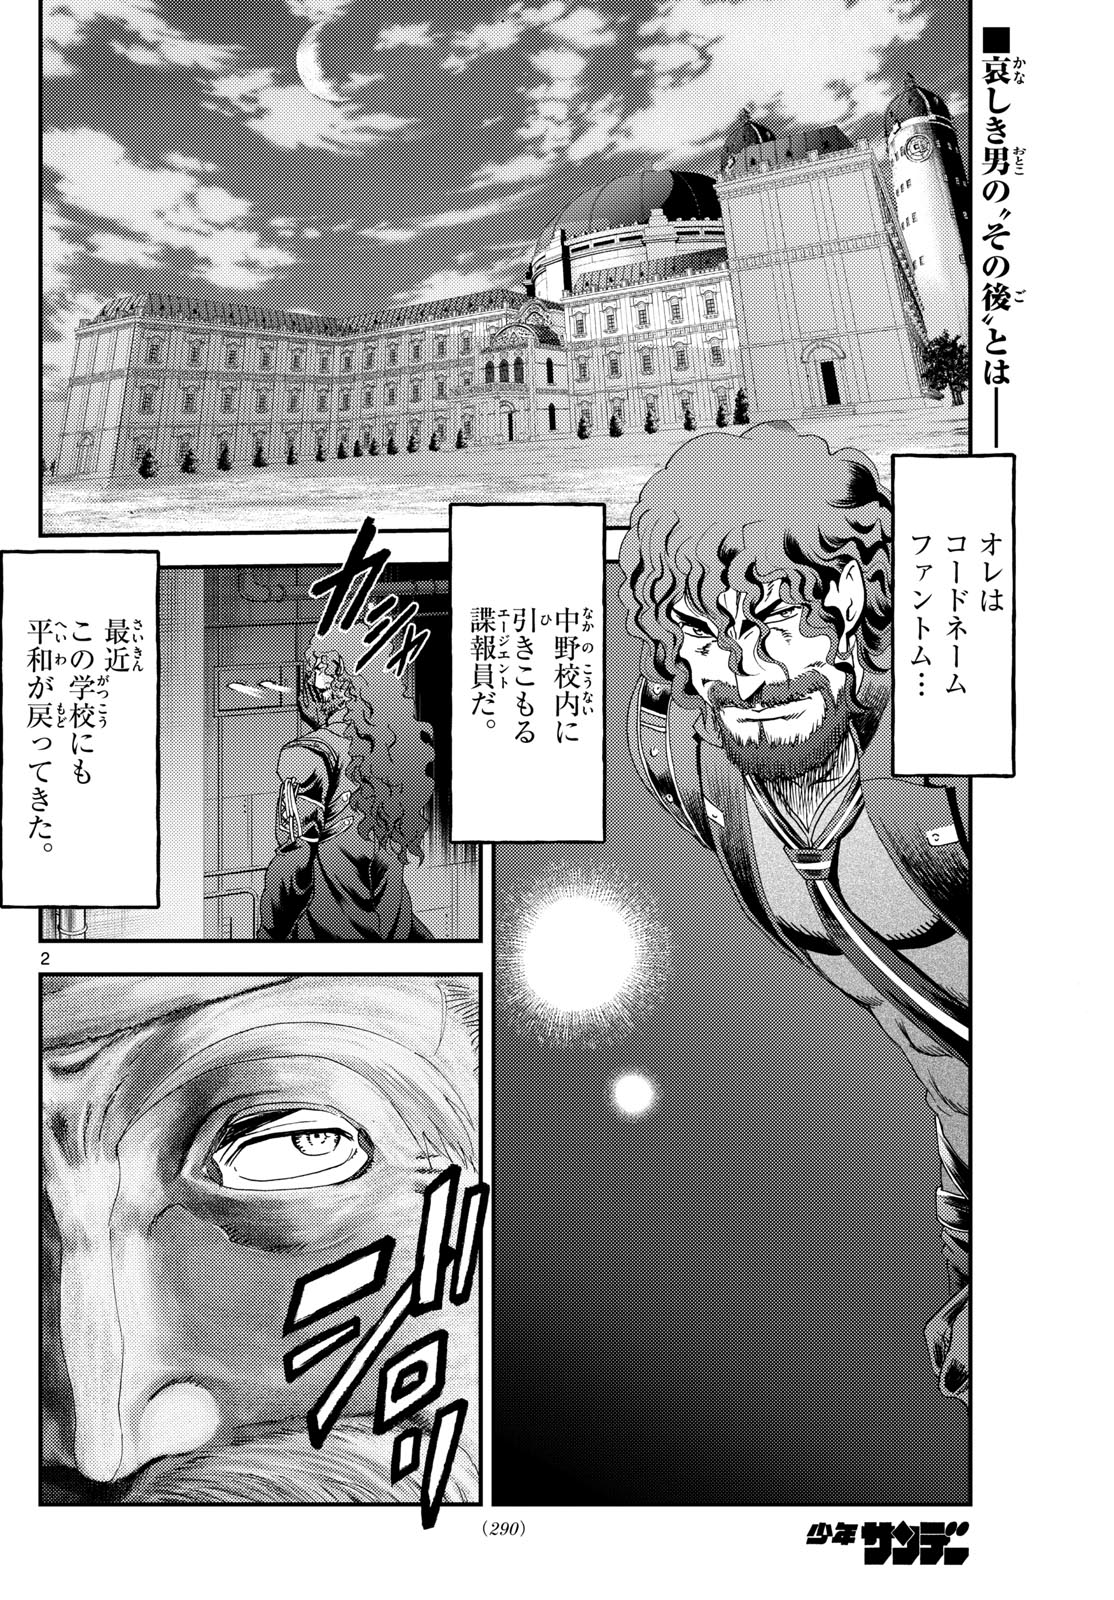 Kimi wa 008 - Chapter 293 - Page 2